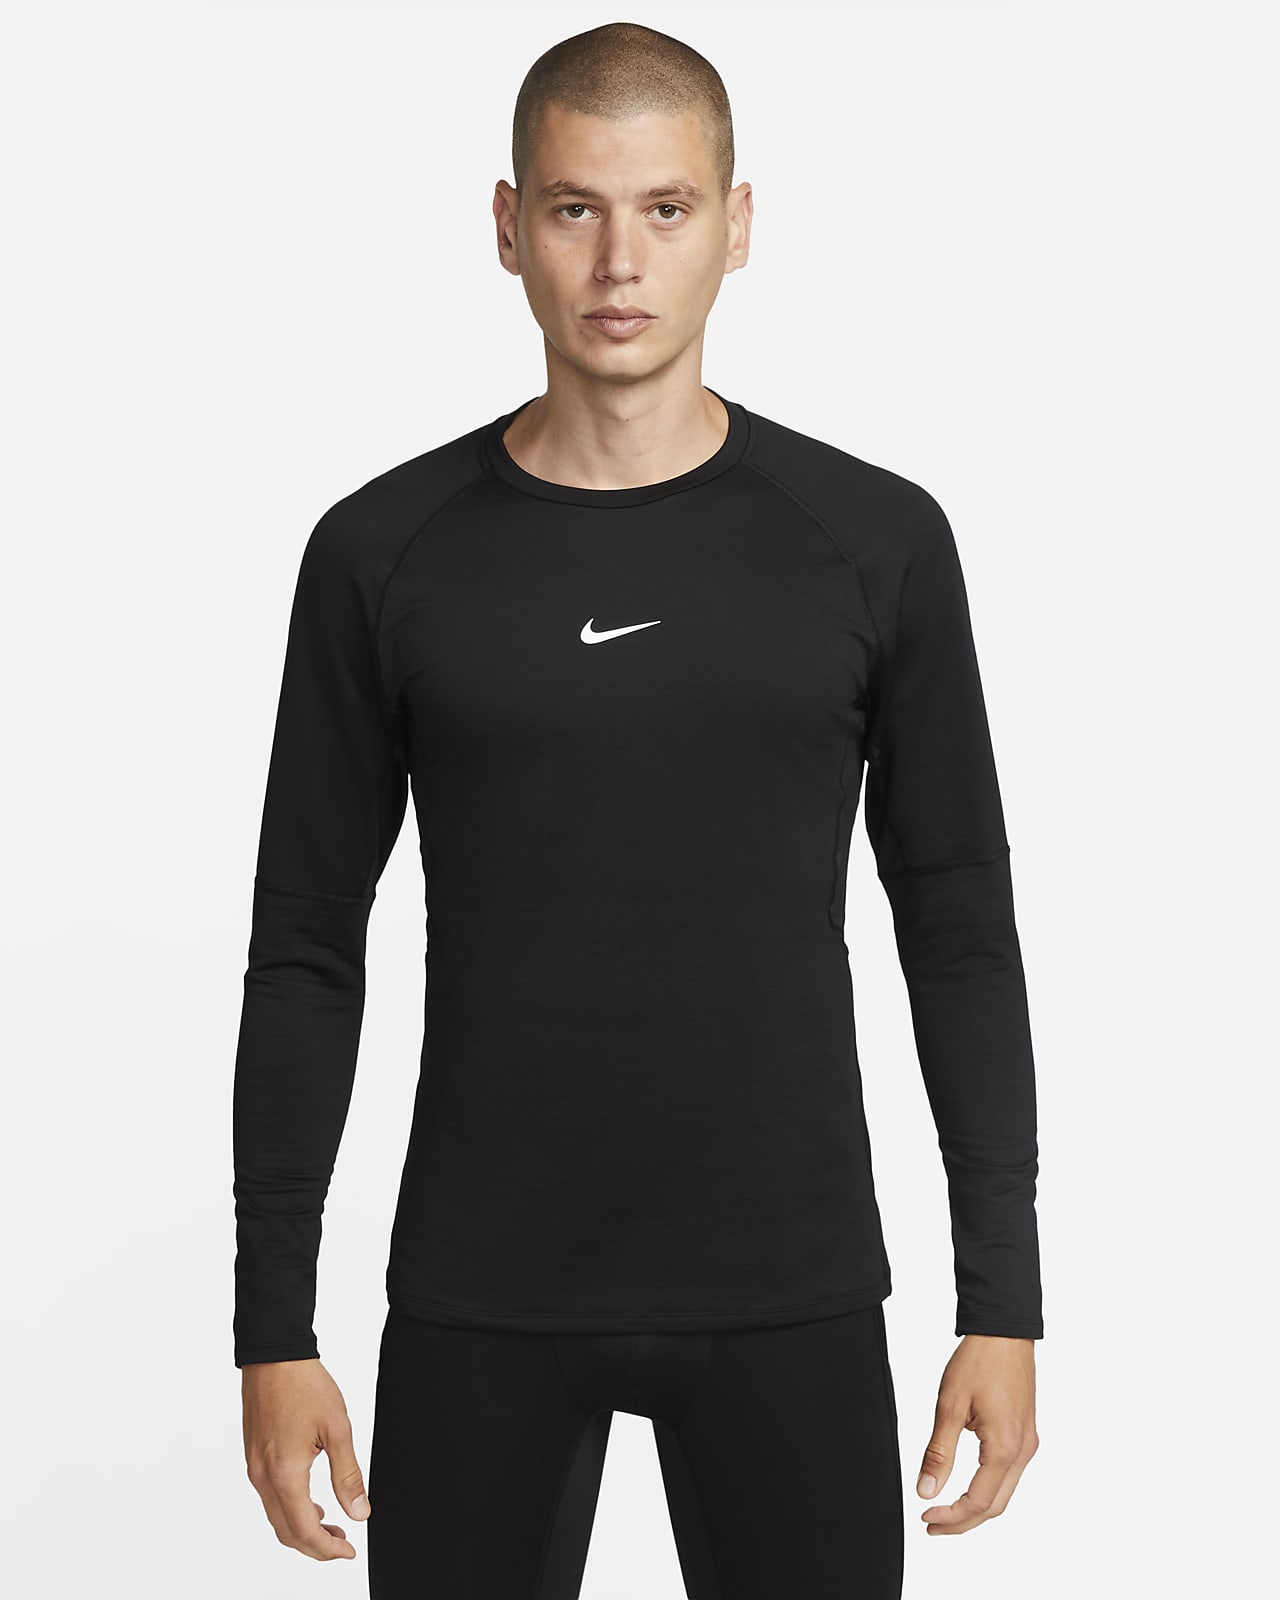 Långärmad tröja Nike Pro Warm för män